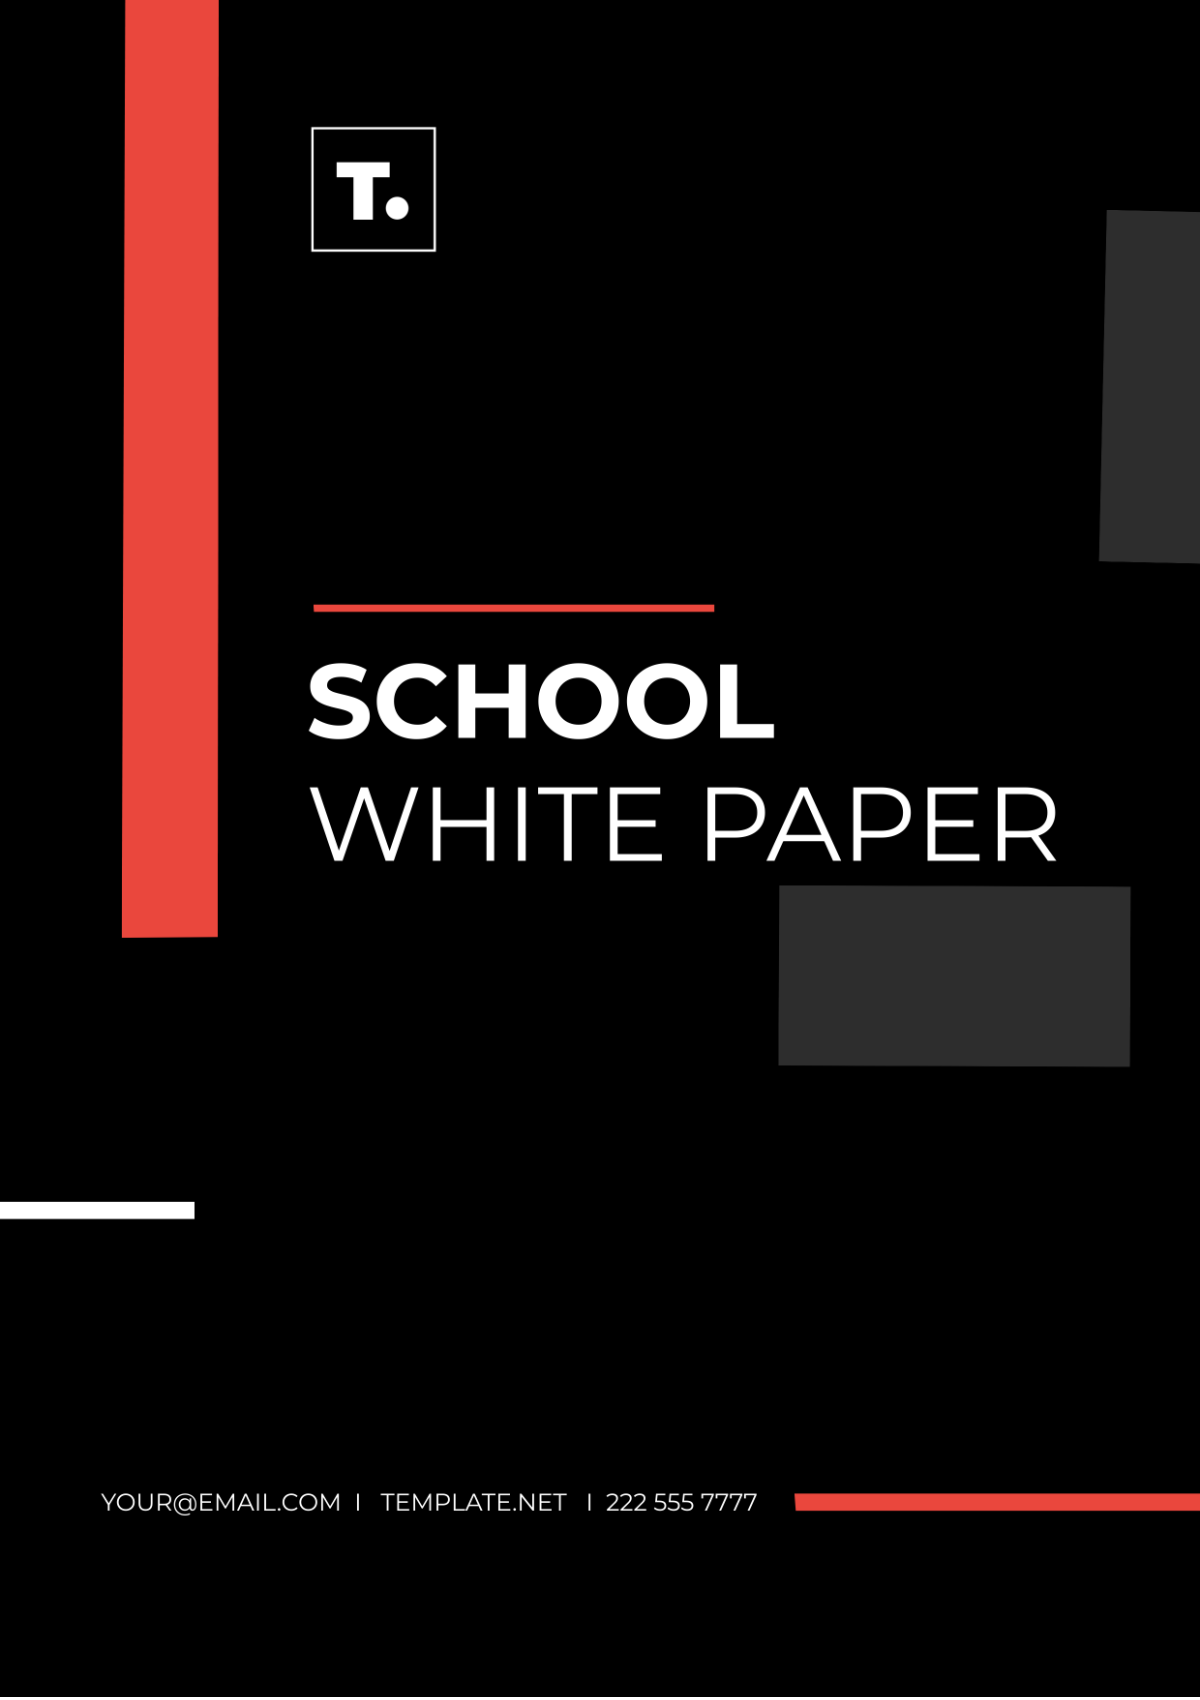 School White Paper Template